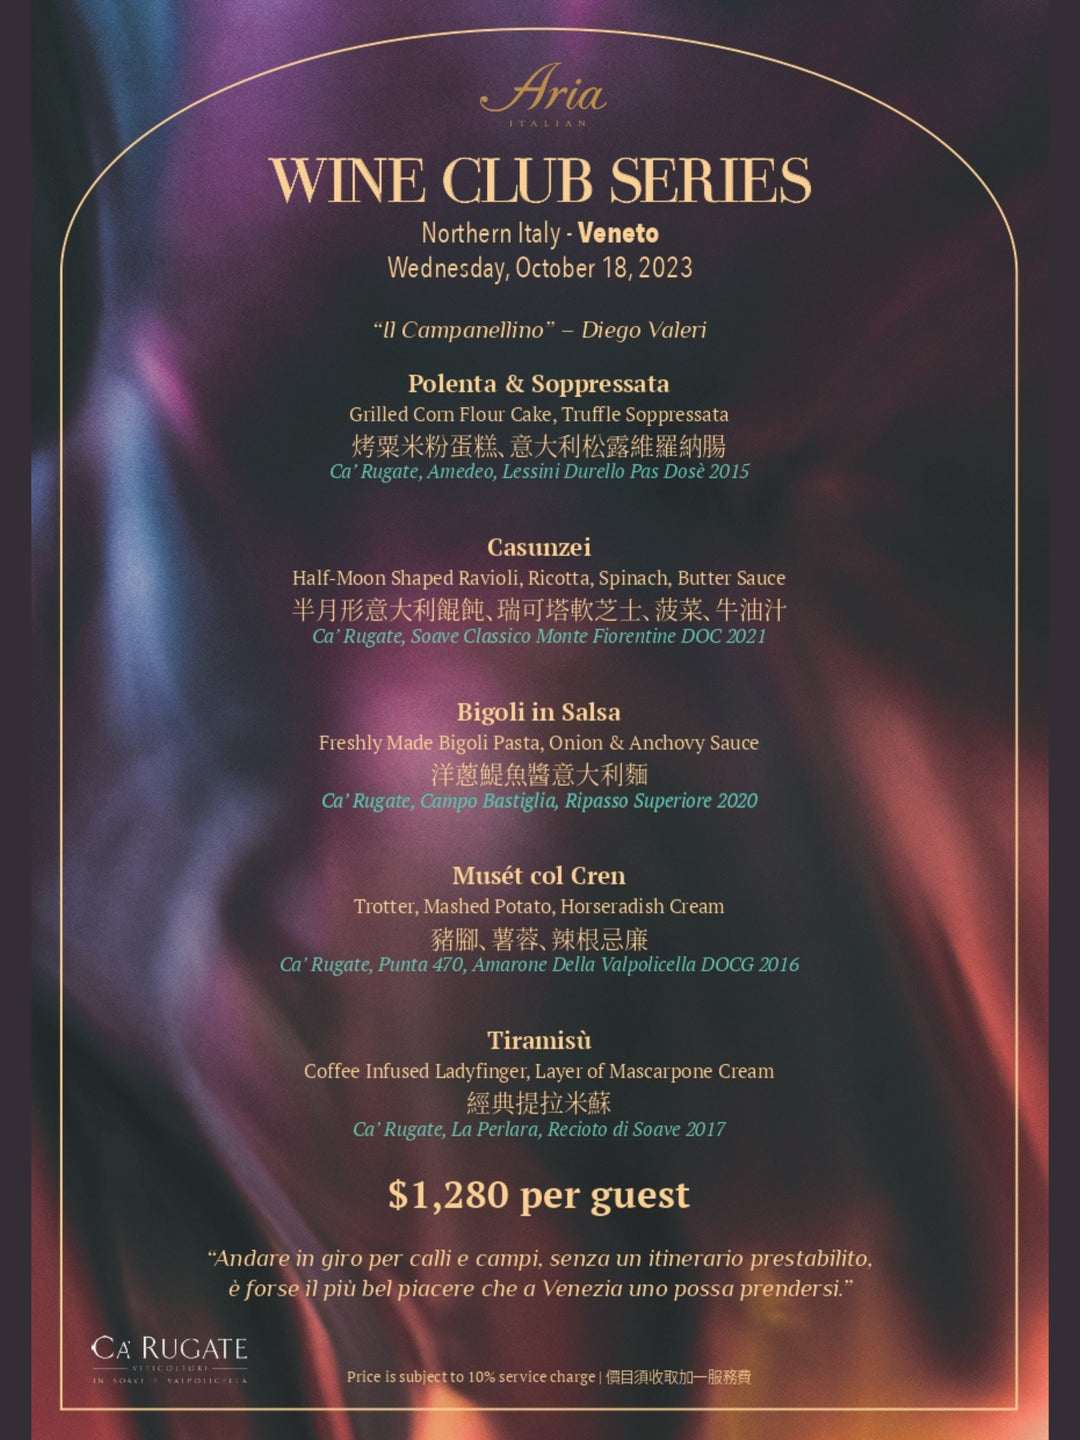 ARIA WINE CLUB SERIES - 意大利北部威尼托區葡萄酒配對晚宴 [需付按金]
